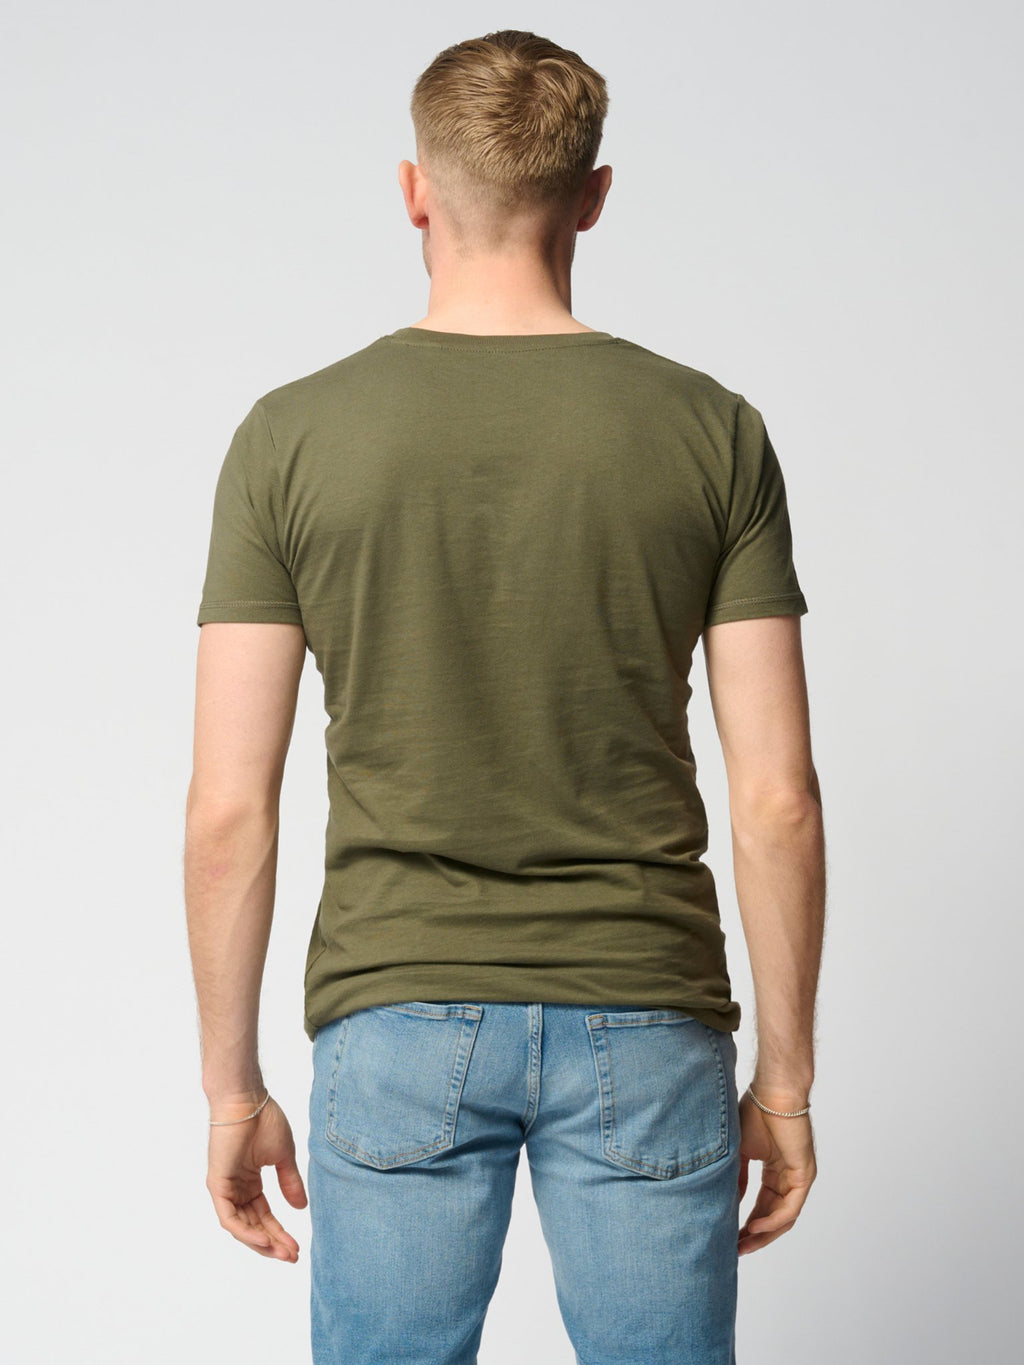 T-shirt musculaire - Green de l'armée